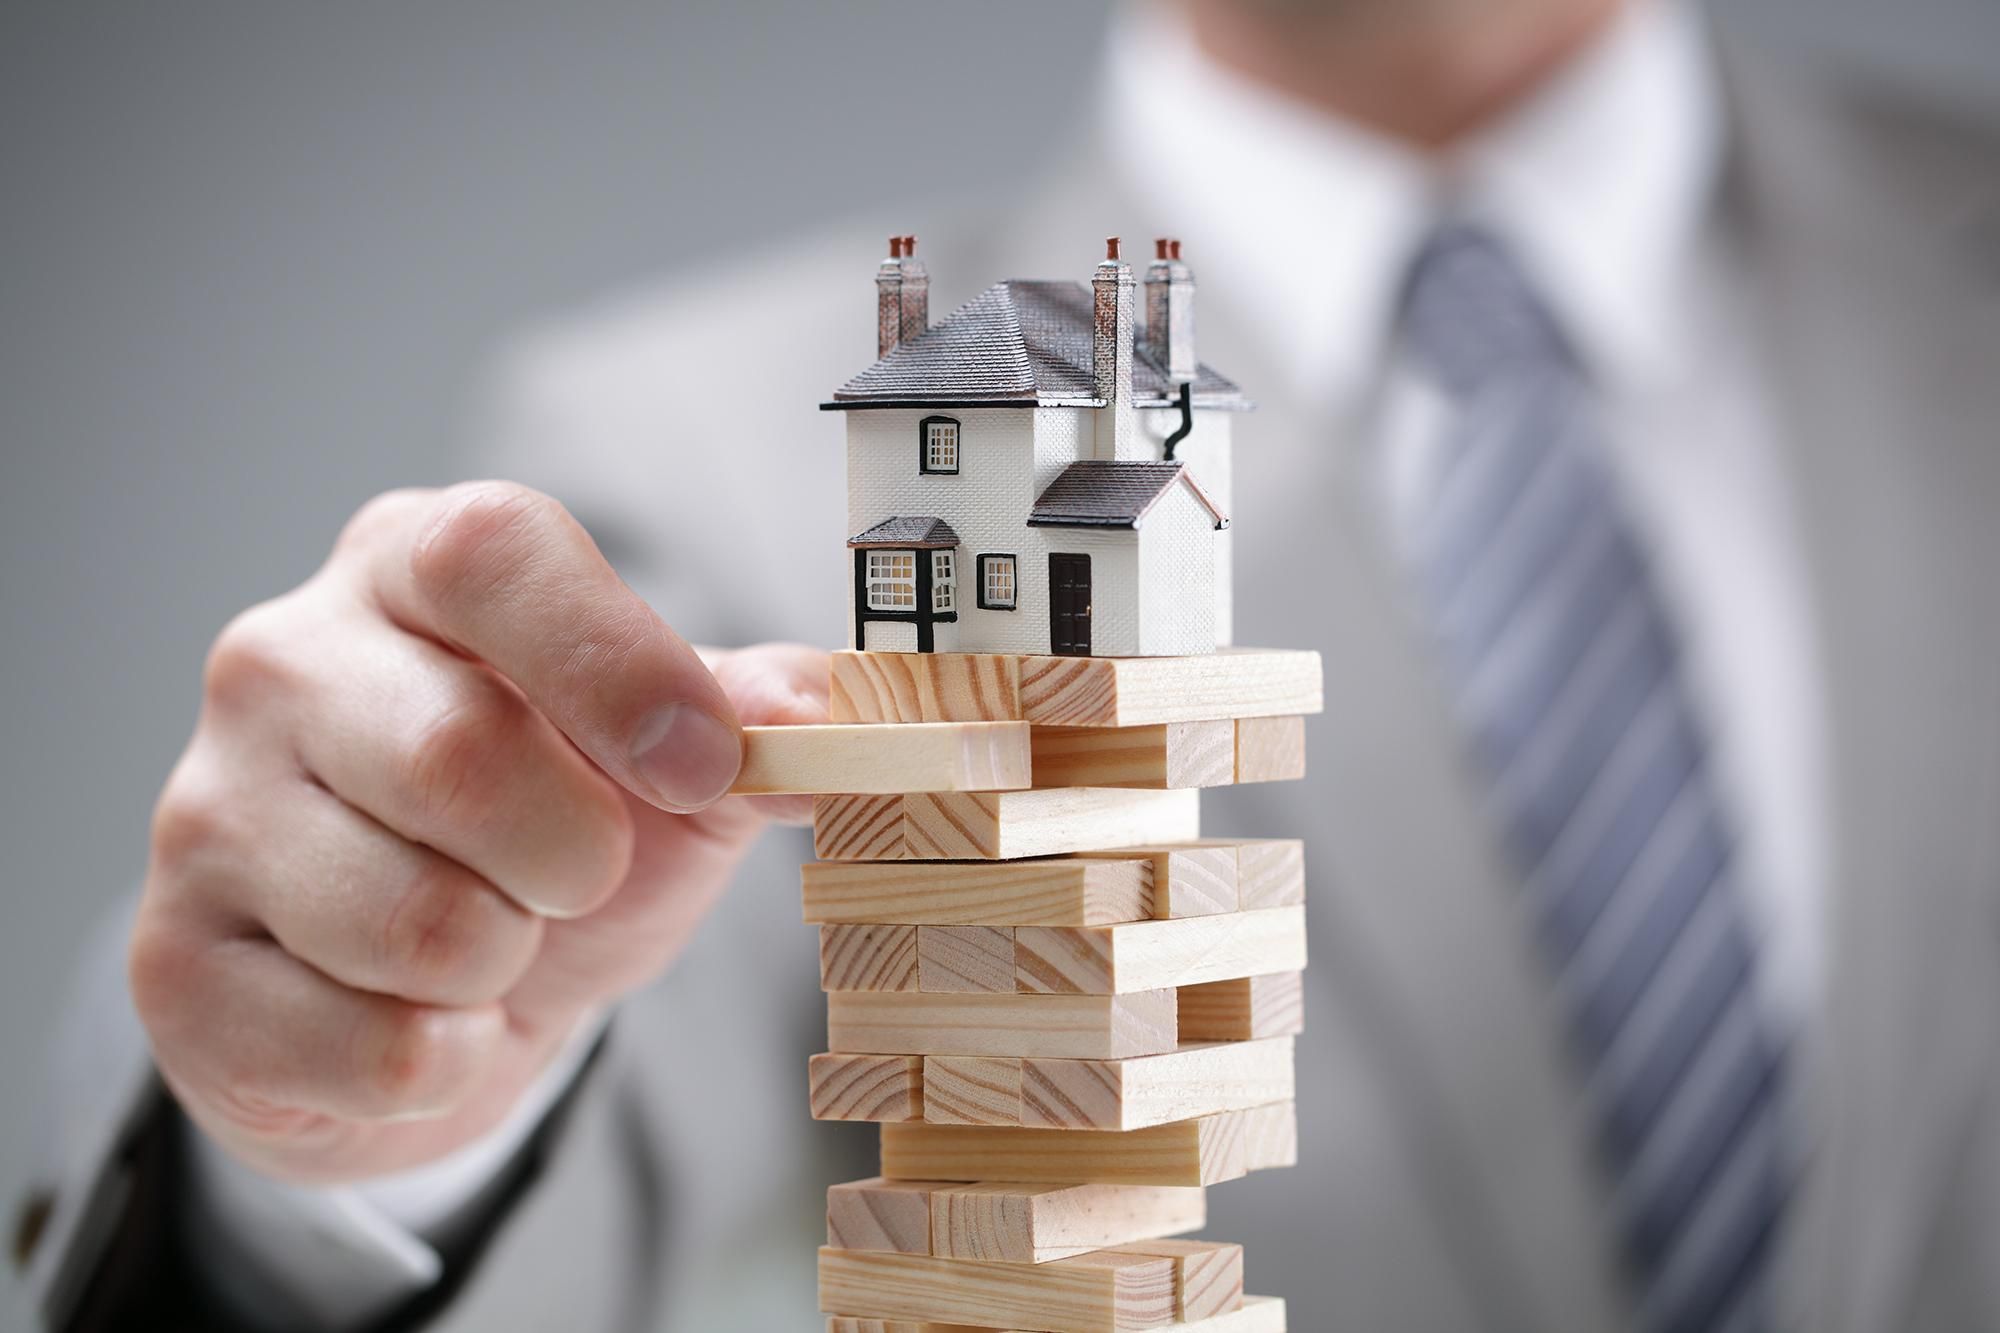 Цены на недвижимость искусственно снижают, обманывая бюджет на миллионы гривен: схема